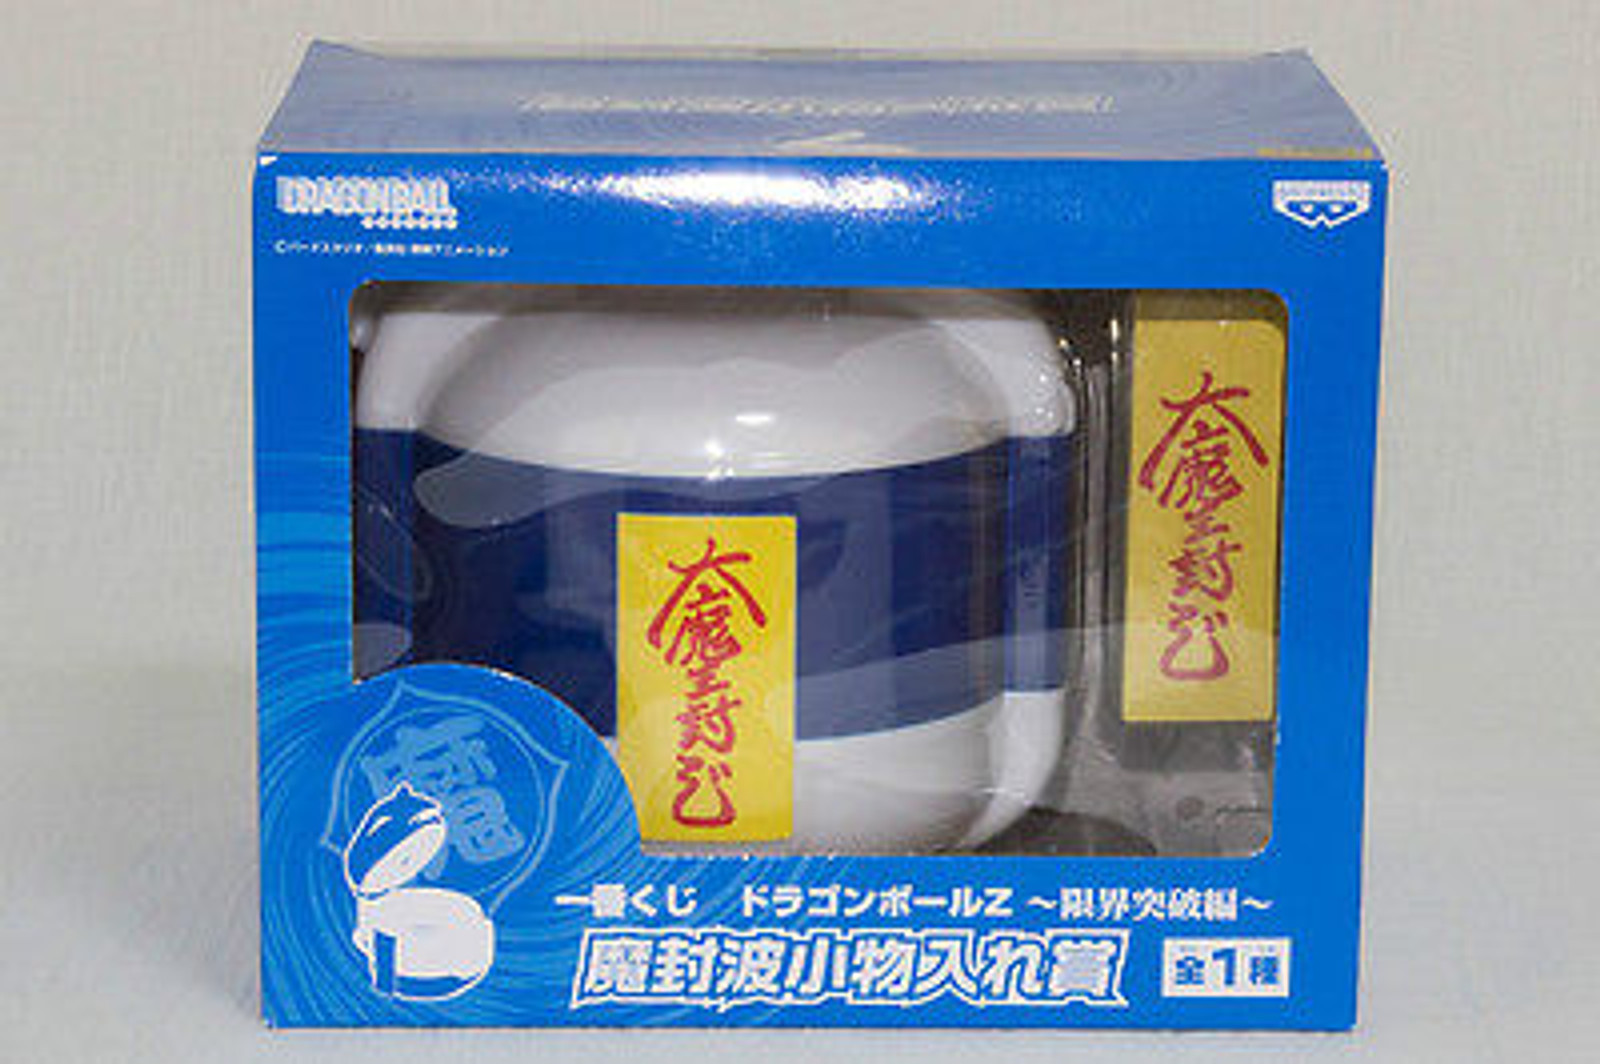 Dragon Ball Z  Ichiban Kuji  Mafuba Jar Case Banpresto JAPAN ANIME